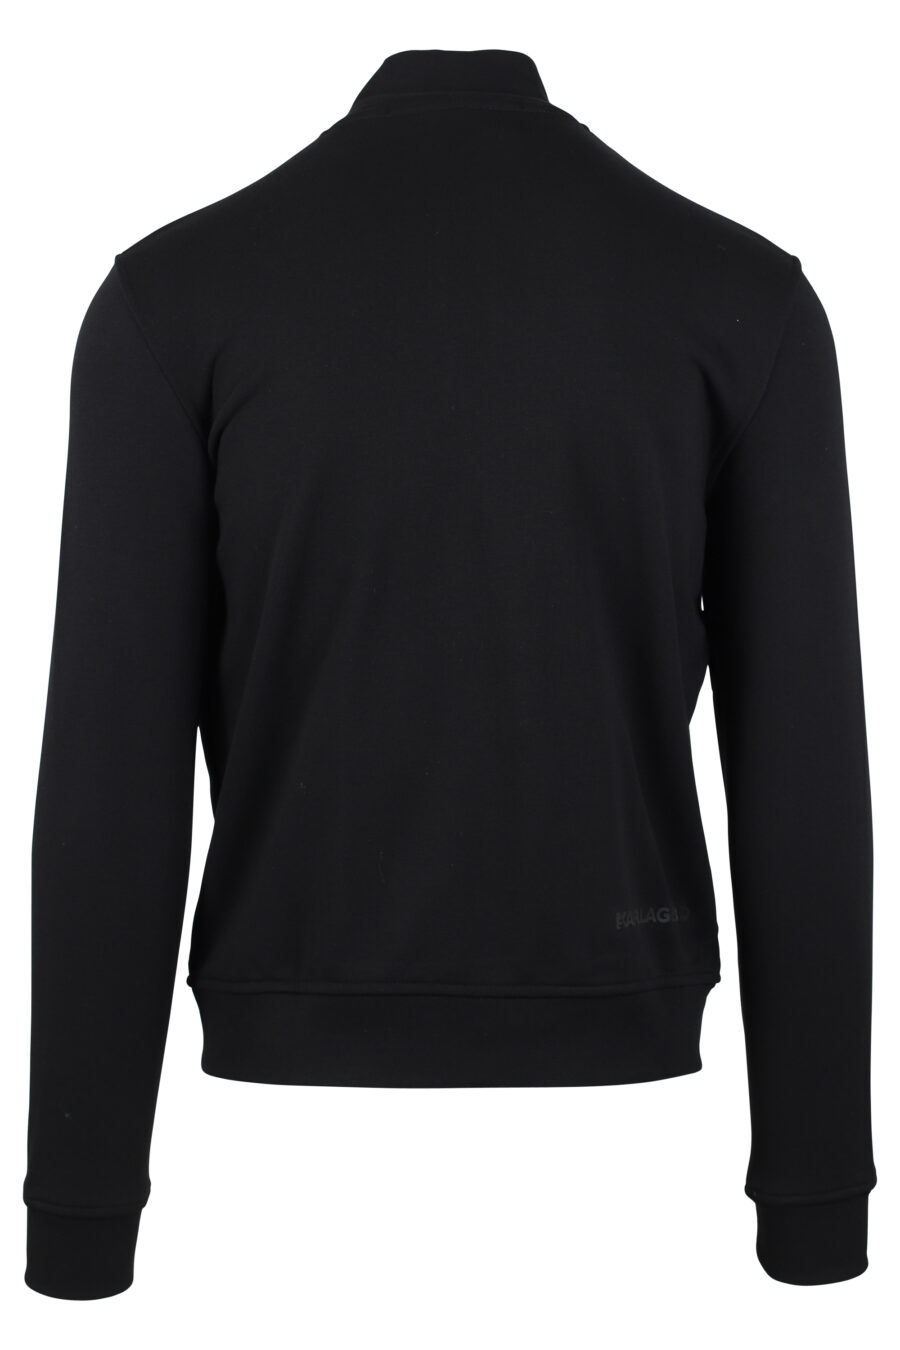 Schwarzes Sweatshirt mit Reißverschluss und "karl"-Logo in weißer Silhouette - IMG 4629